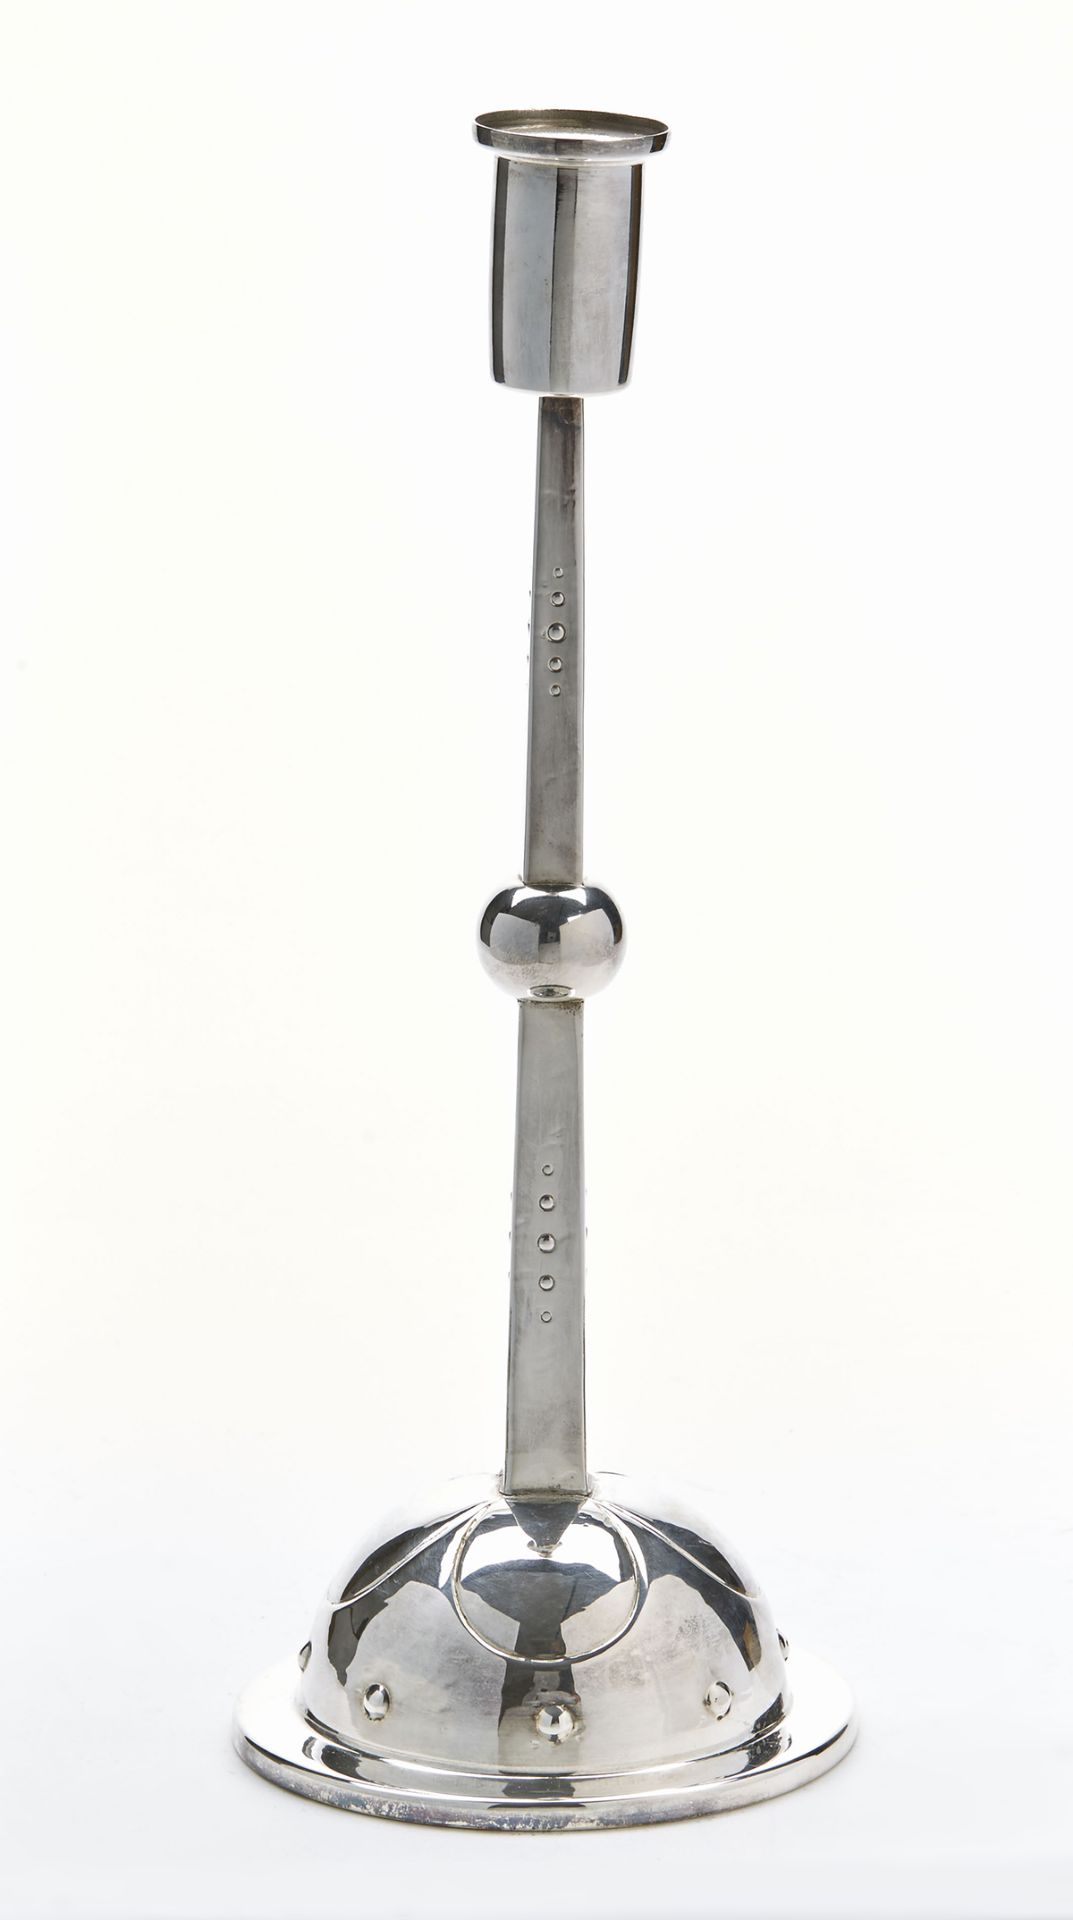 JUGENDSTIL WMF SILVER PLATED CANDLESTICK HUGO LEVEN c.1905   DIMENSIONS   Height 27cm, Diameter 10.